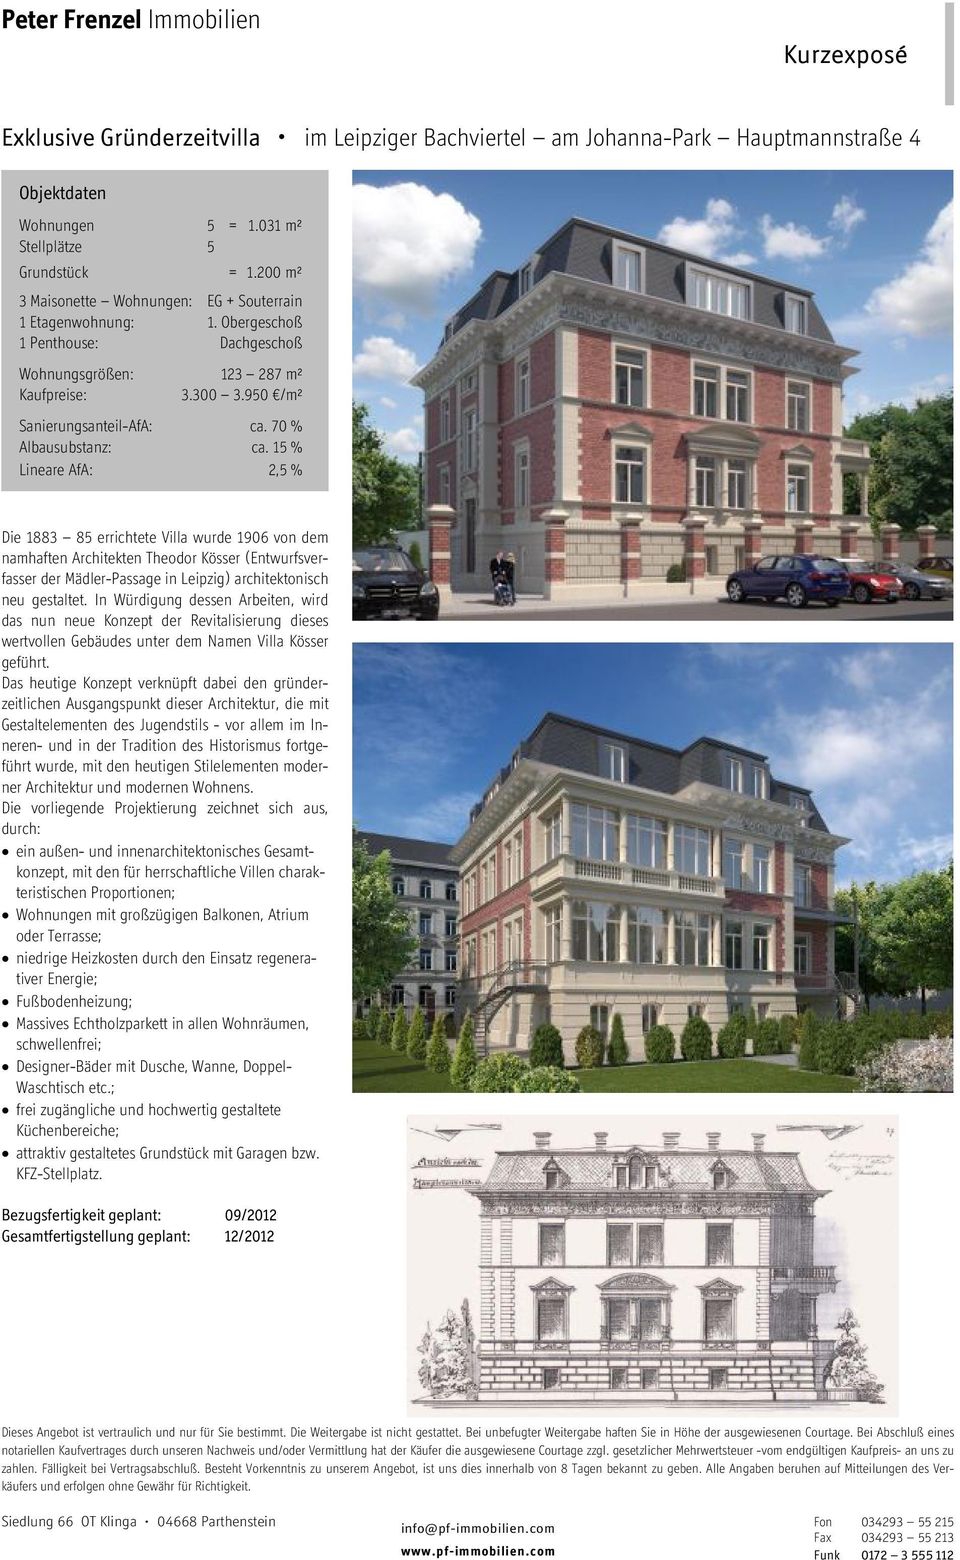 15 % Lineare AfA: 2,5 % Die 1883 85 errichtete Villa wurde 1906 von dem namhaften Architekten Theodor Kösser (Entwurfsverfasser der Mädler-Passage in Leipzig) architektonisch neu gestaltet.